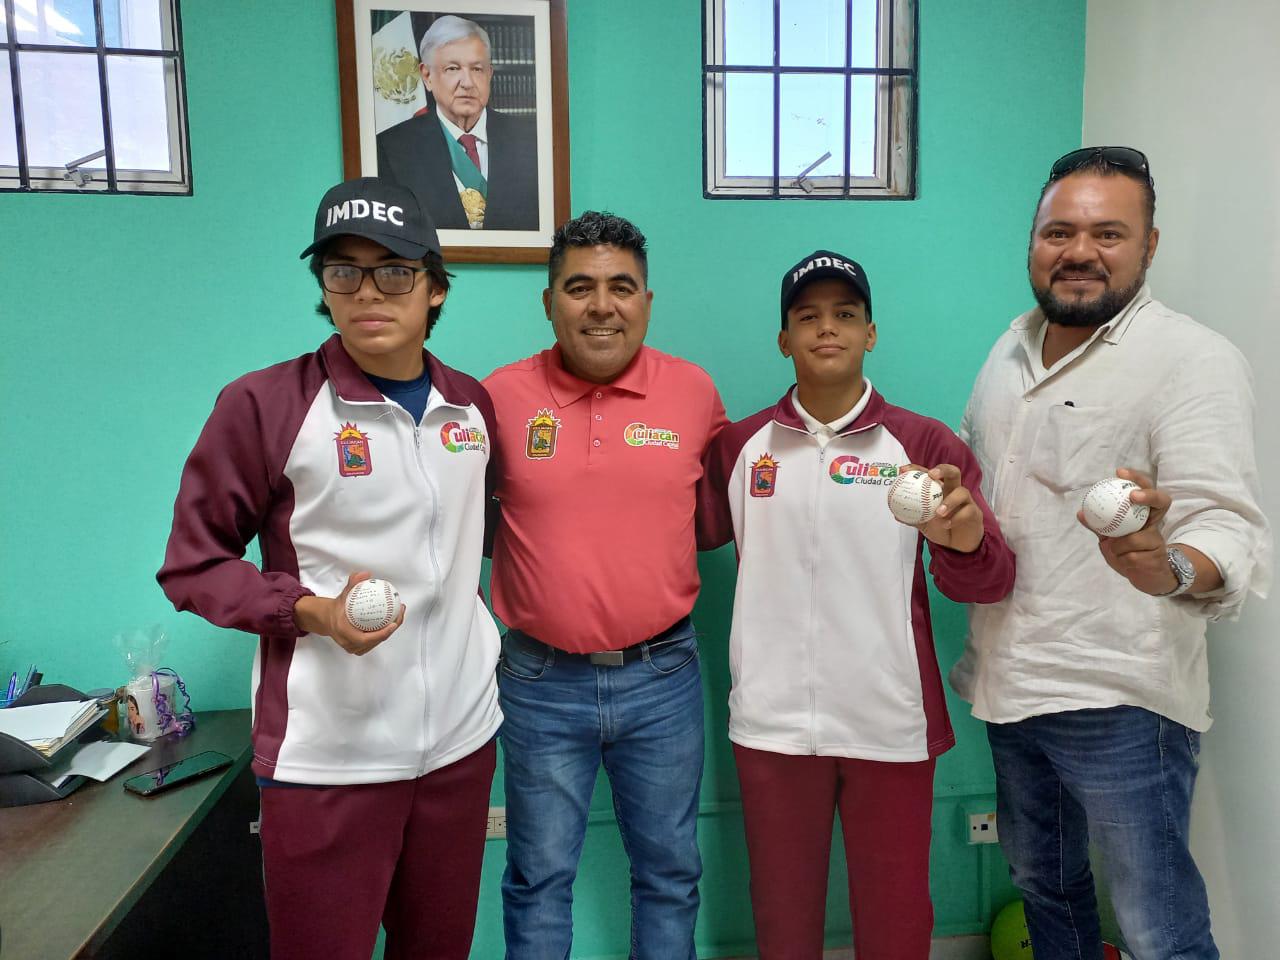 $!Aarón Ibarra y Luis Urías, medallistas culiacanenses en Nacionales Conade, visitan el Imdec